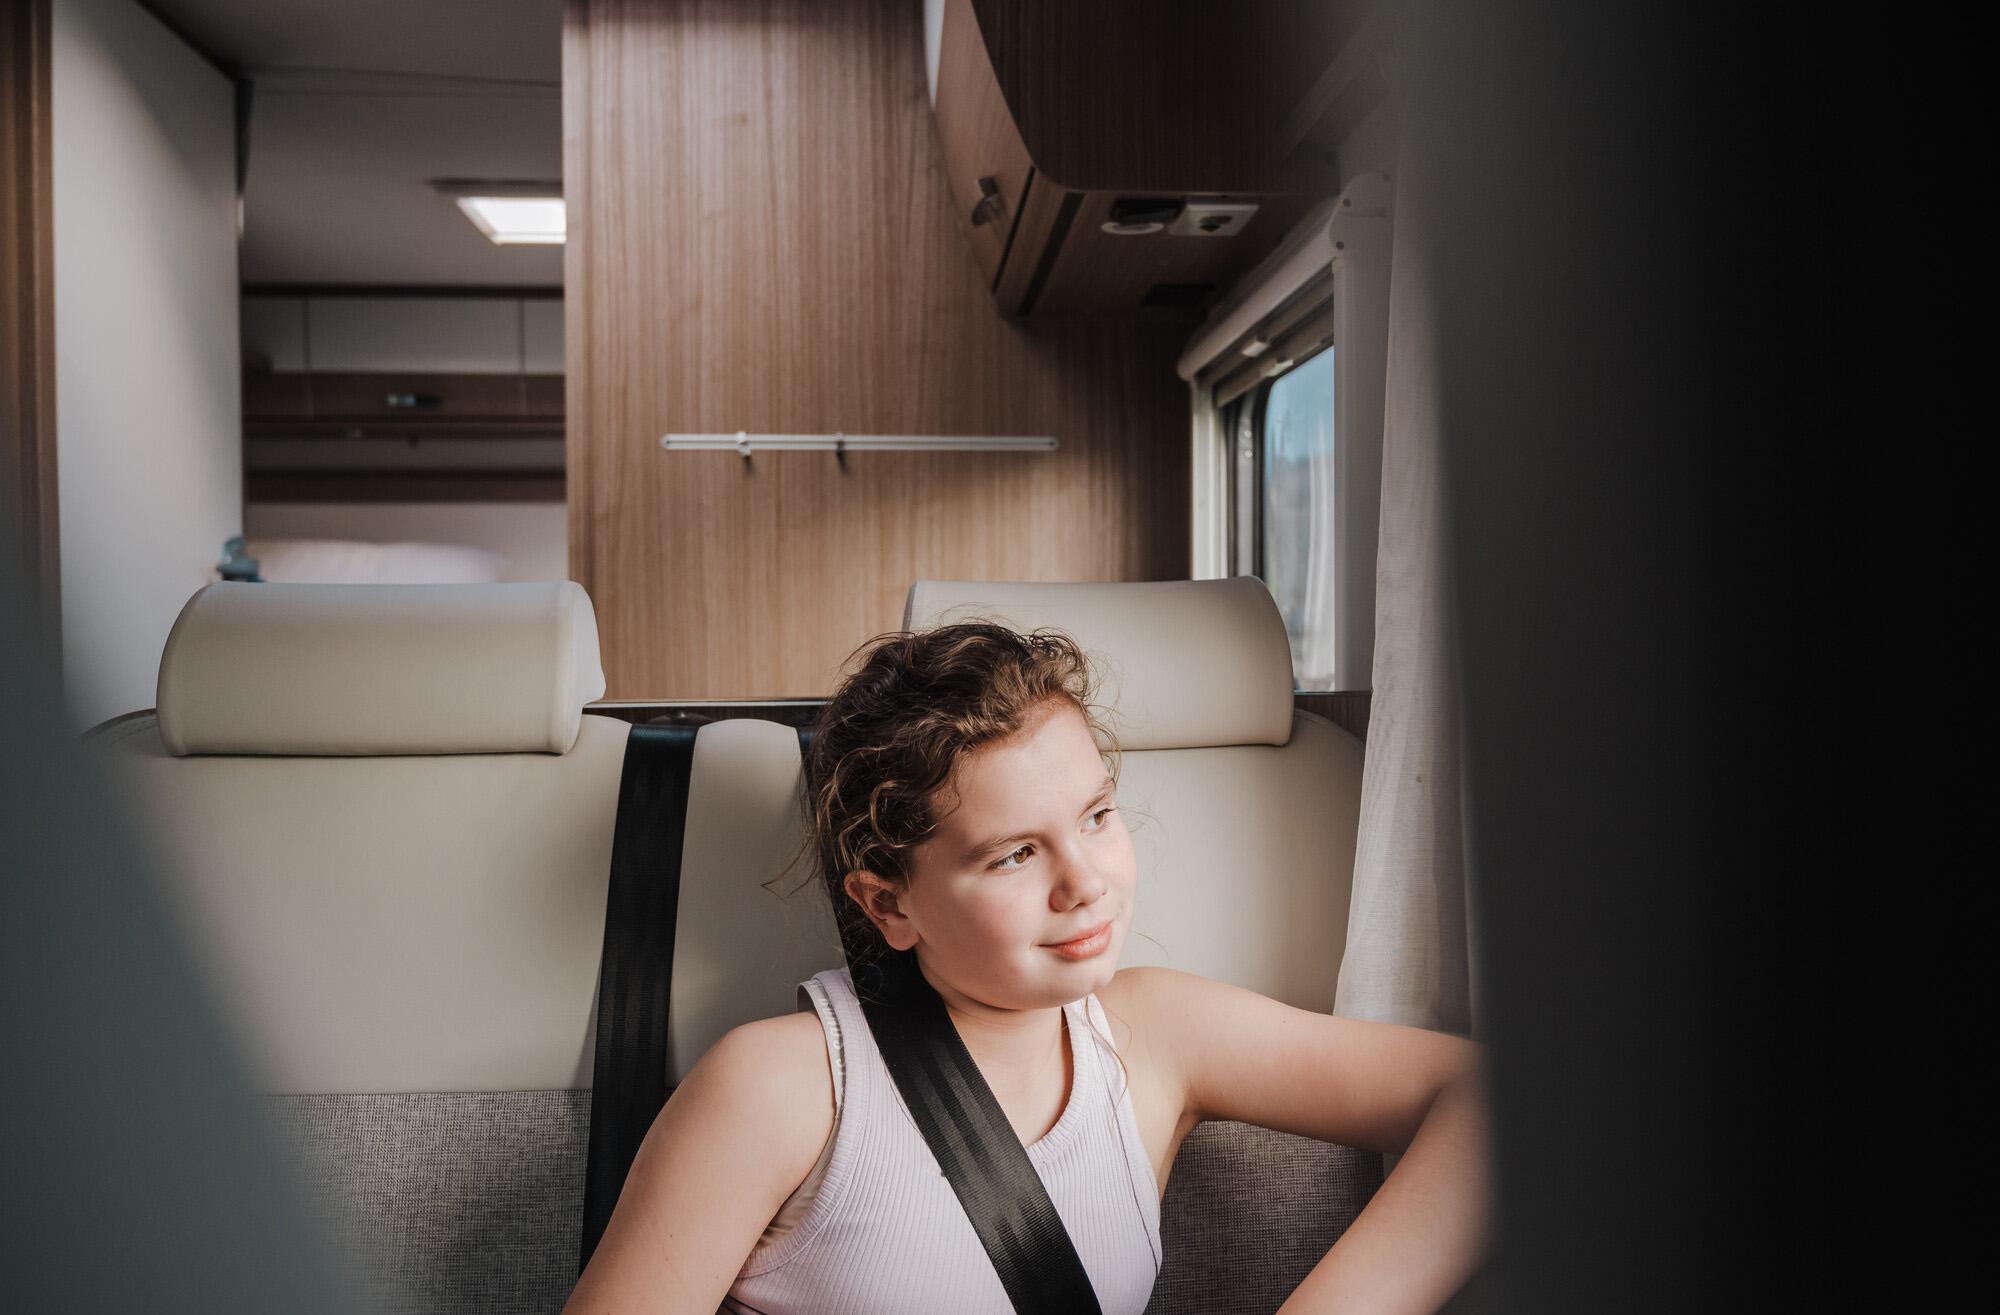 Seatbelts on children in motorhomes